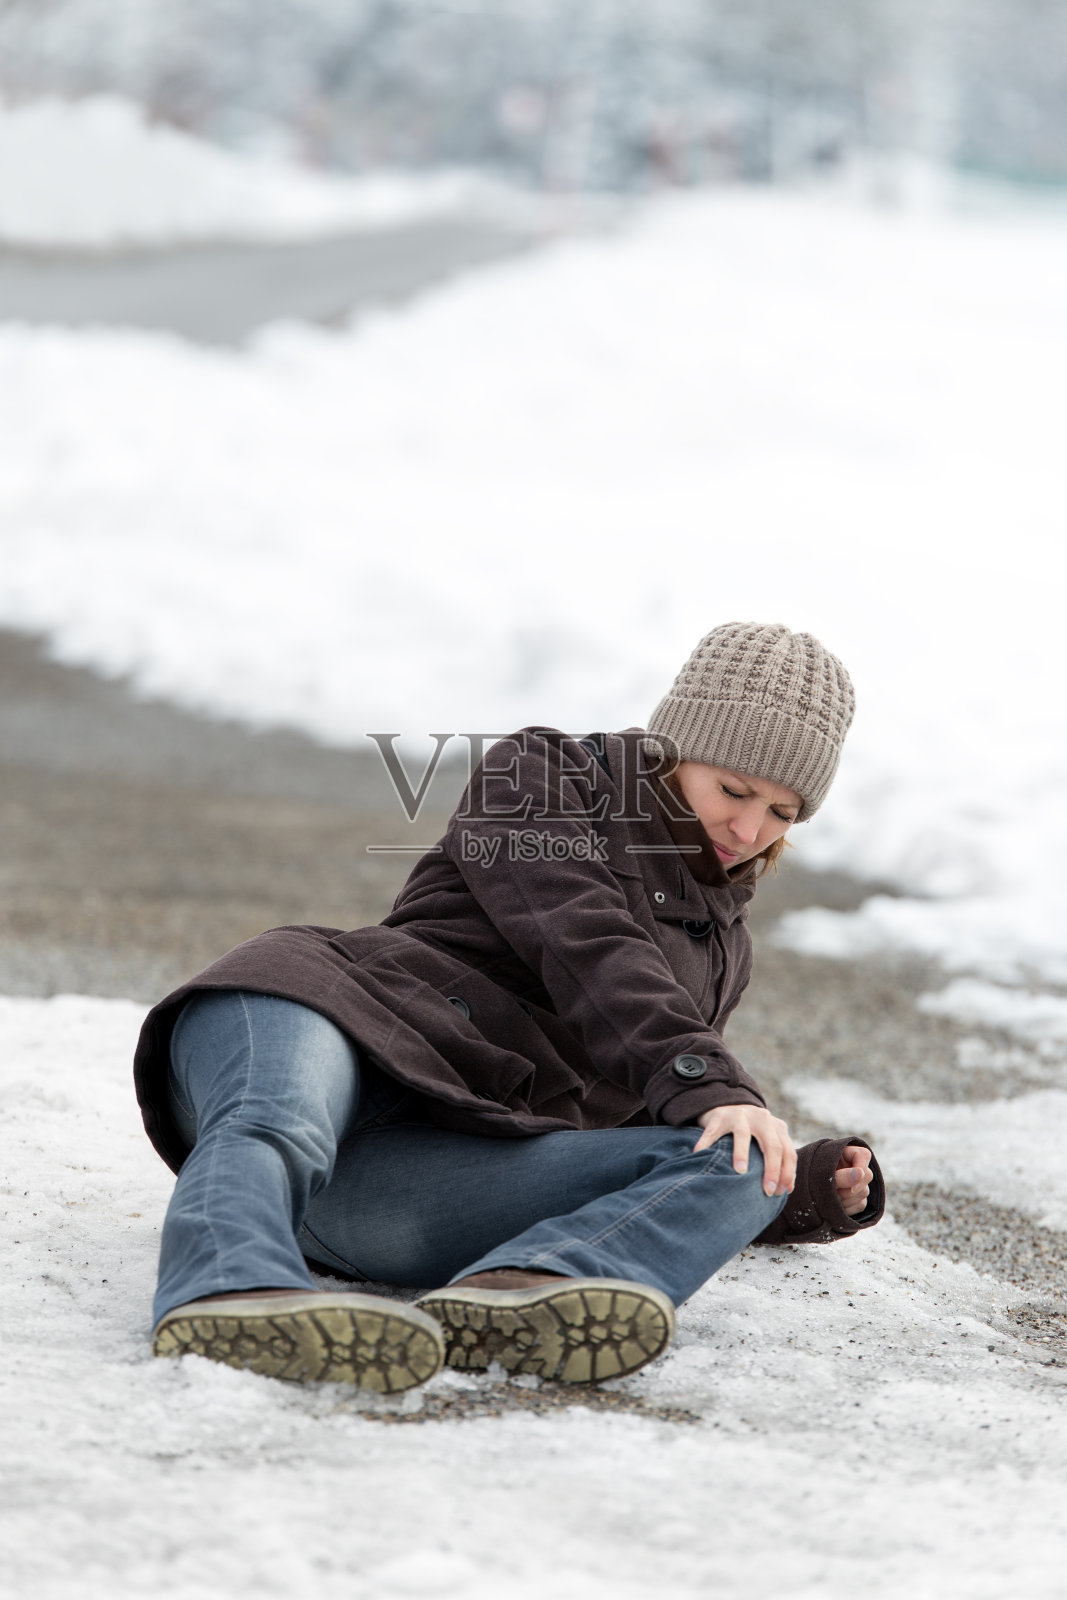 一个年轻女子在结冰的街道上出了车祸照片摄影图片